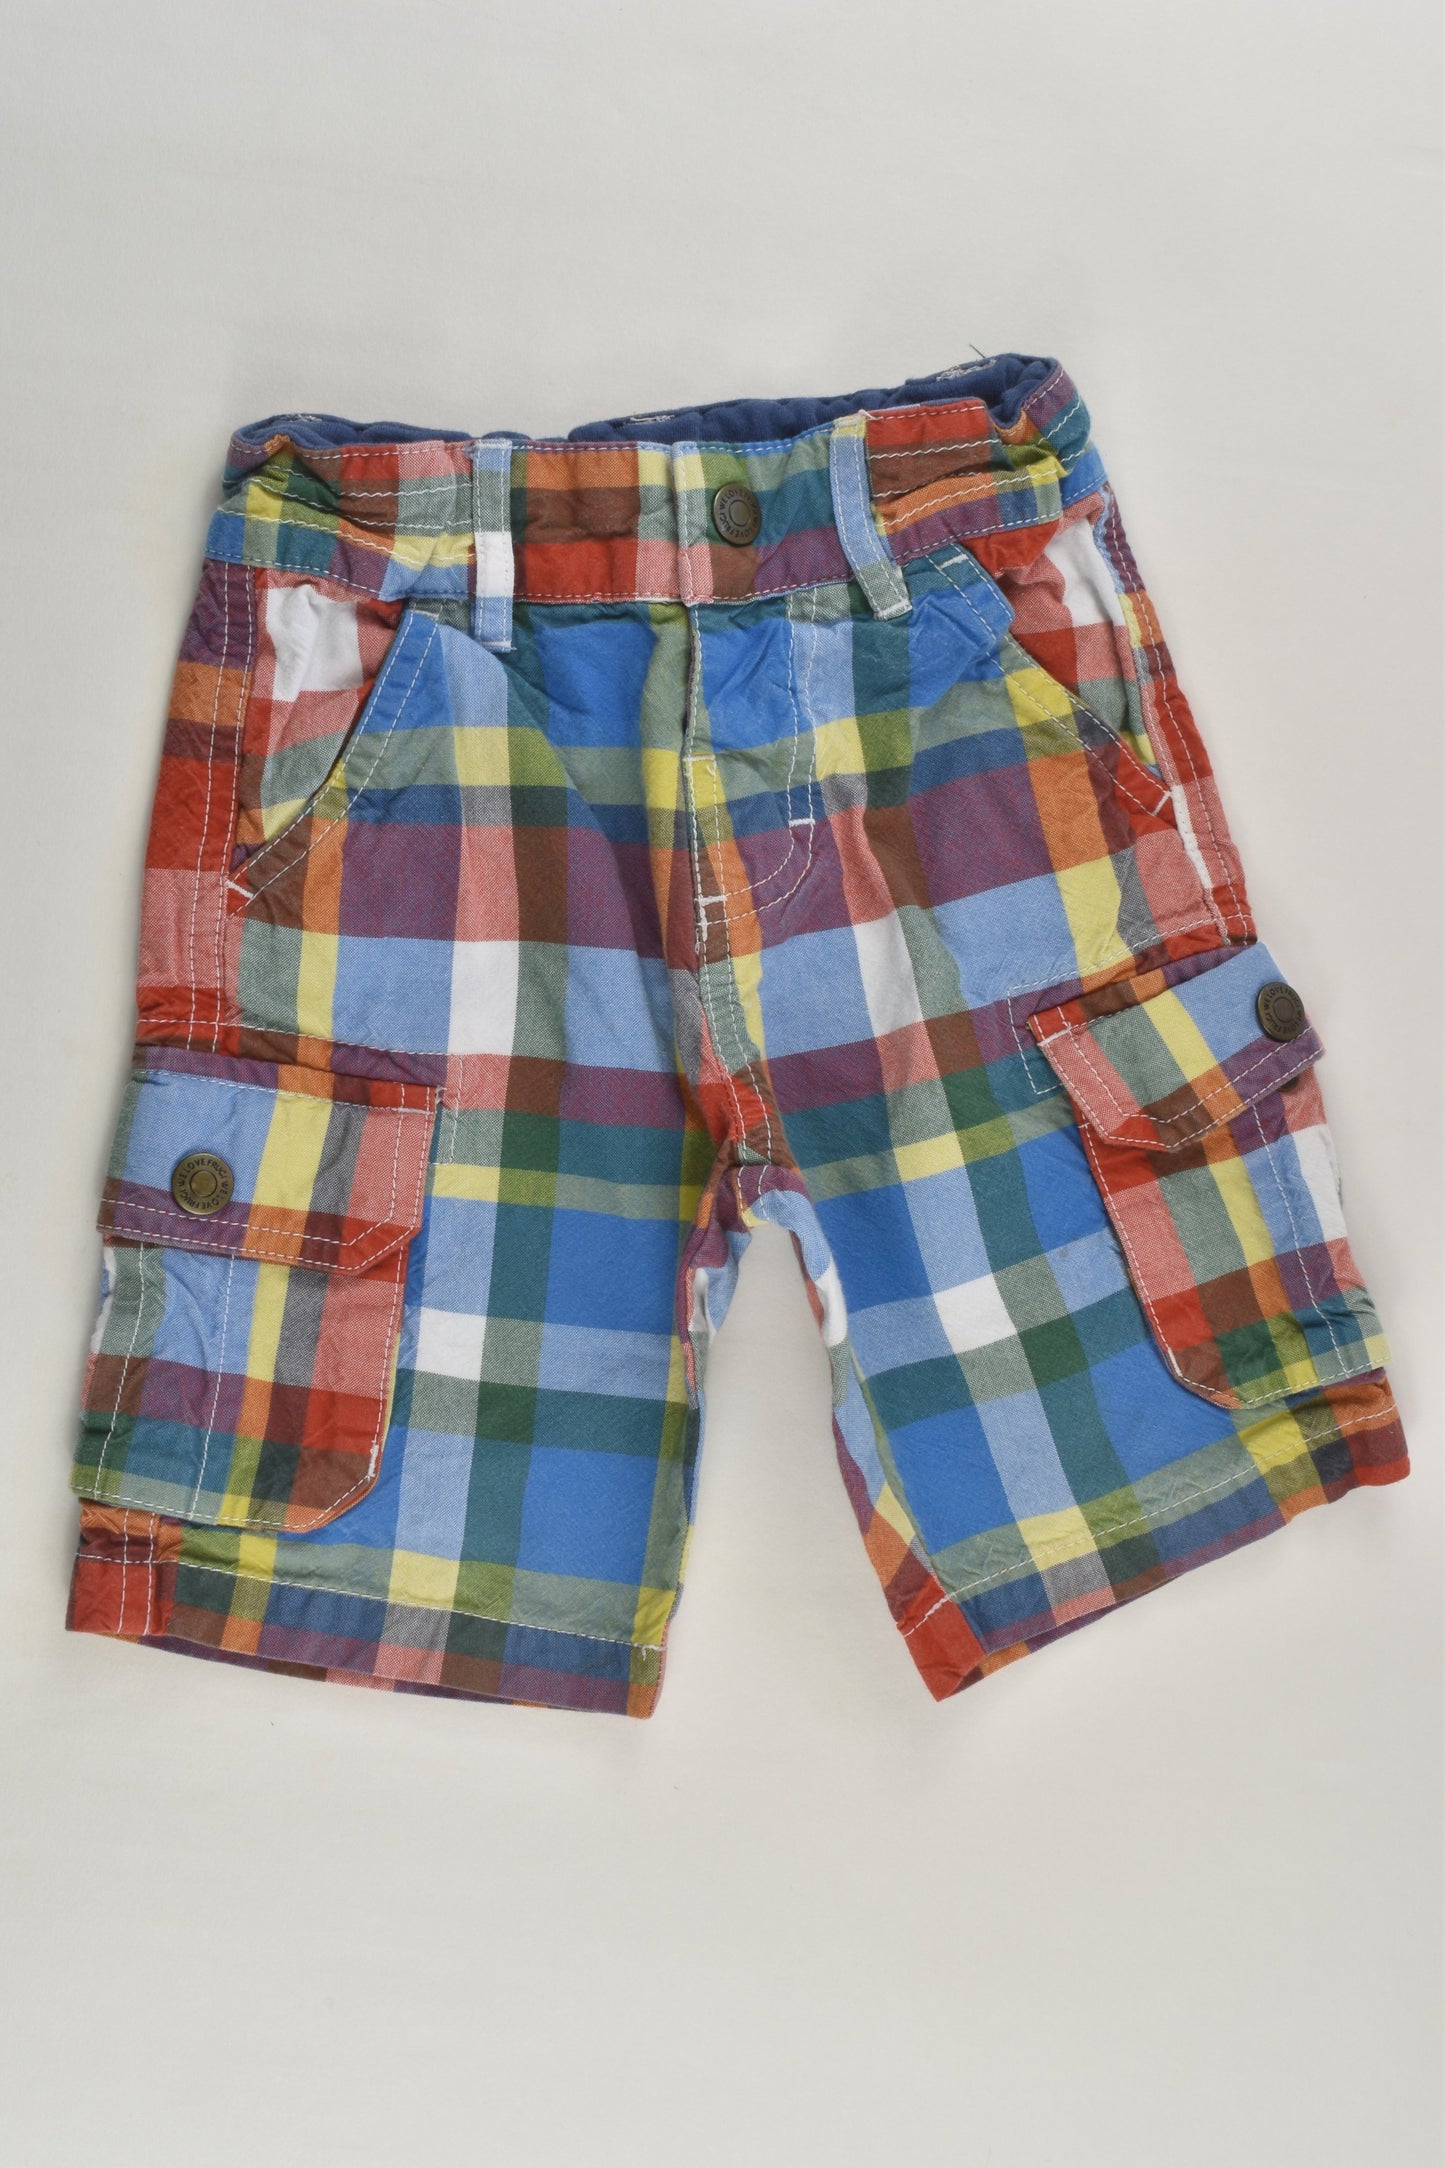 Frugi Size 2-3 (92-98 cm) Checked Shorts